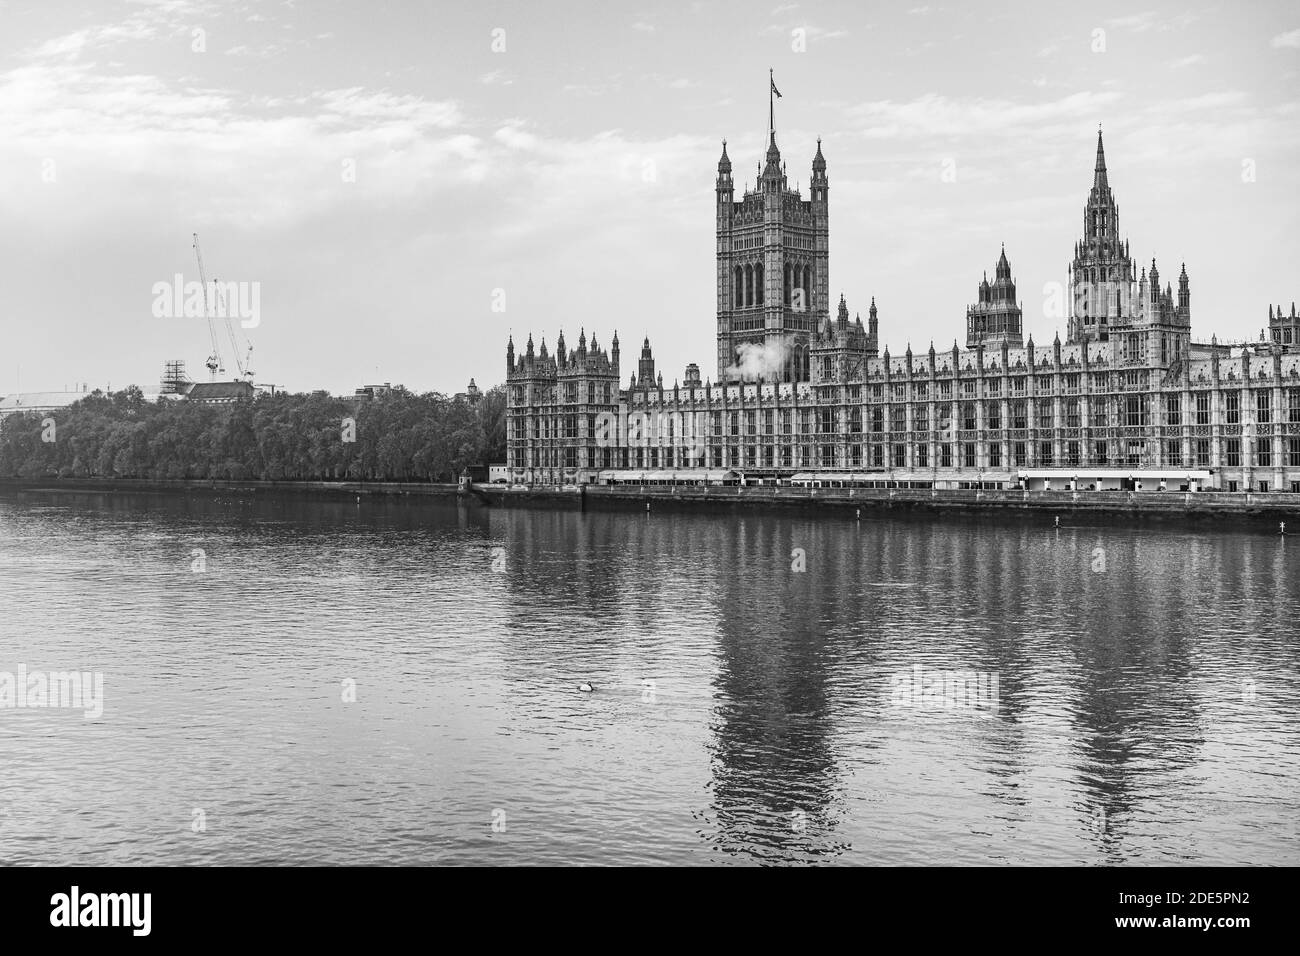 Black and White Houses of Parliament, le bâtiment emblématique de Londres et l'attraction touristique avec la Tamise, tourné dans le confinement du coronavirus Covid-19 en Angleterre, au Royaume-Uni Banque D'Images